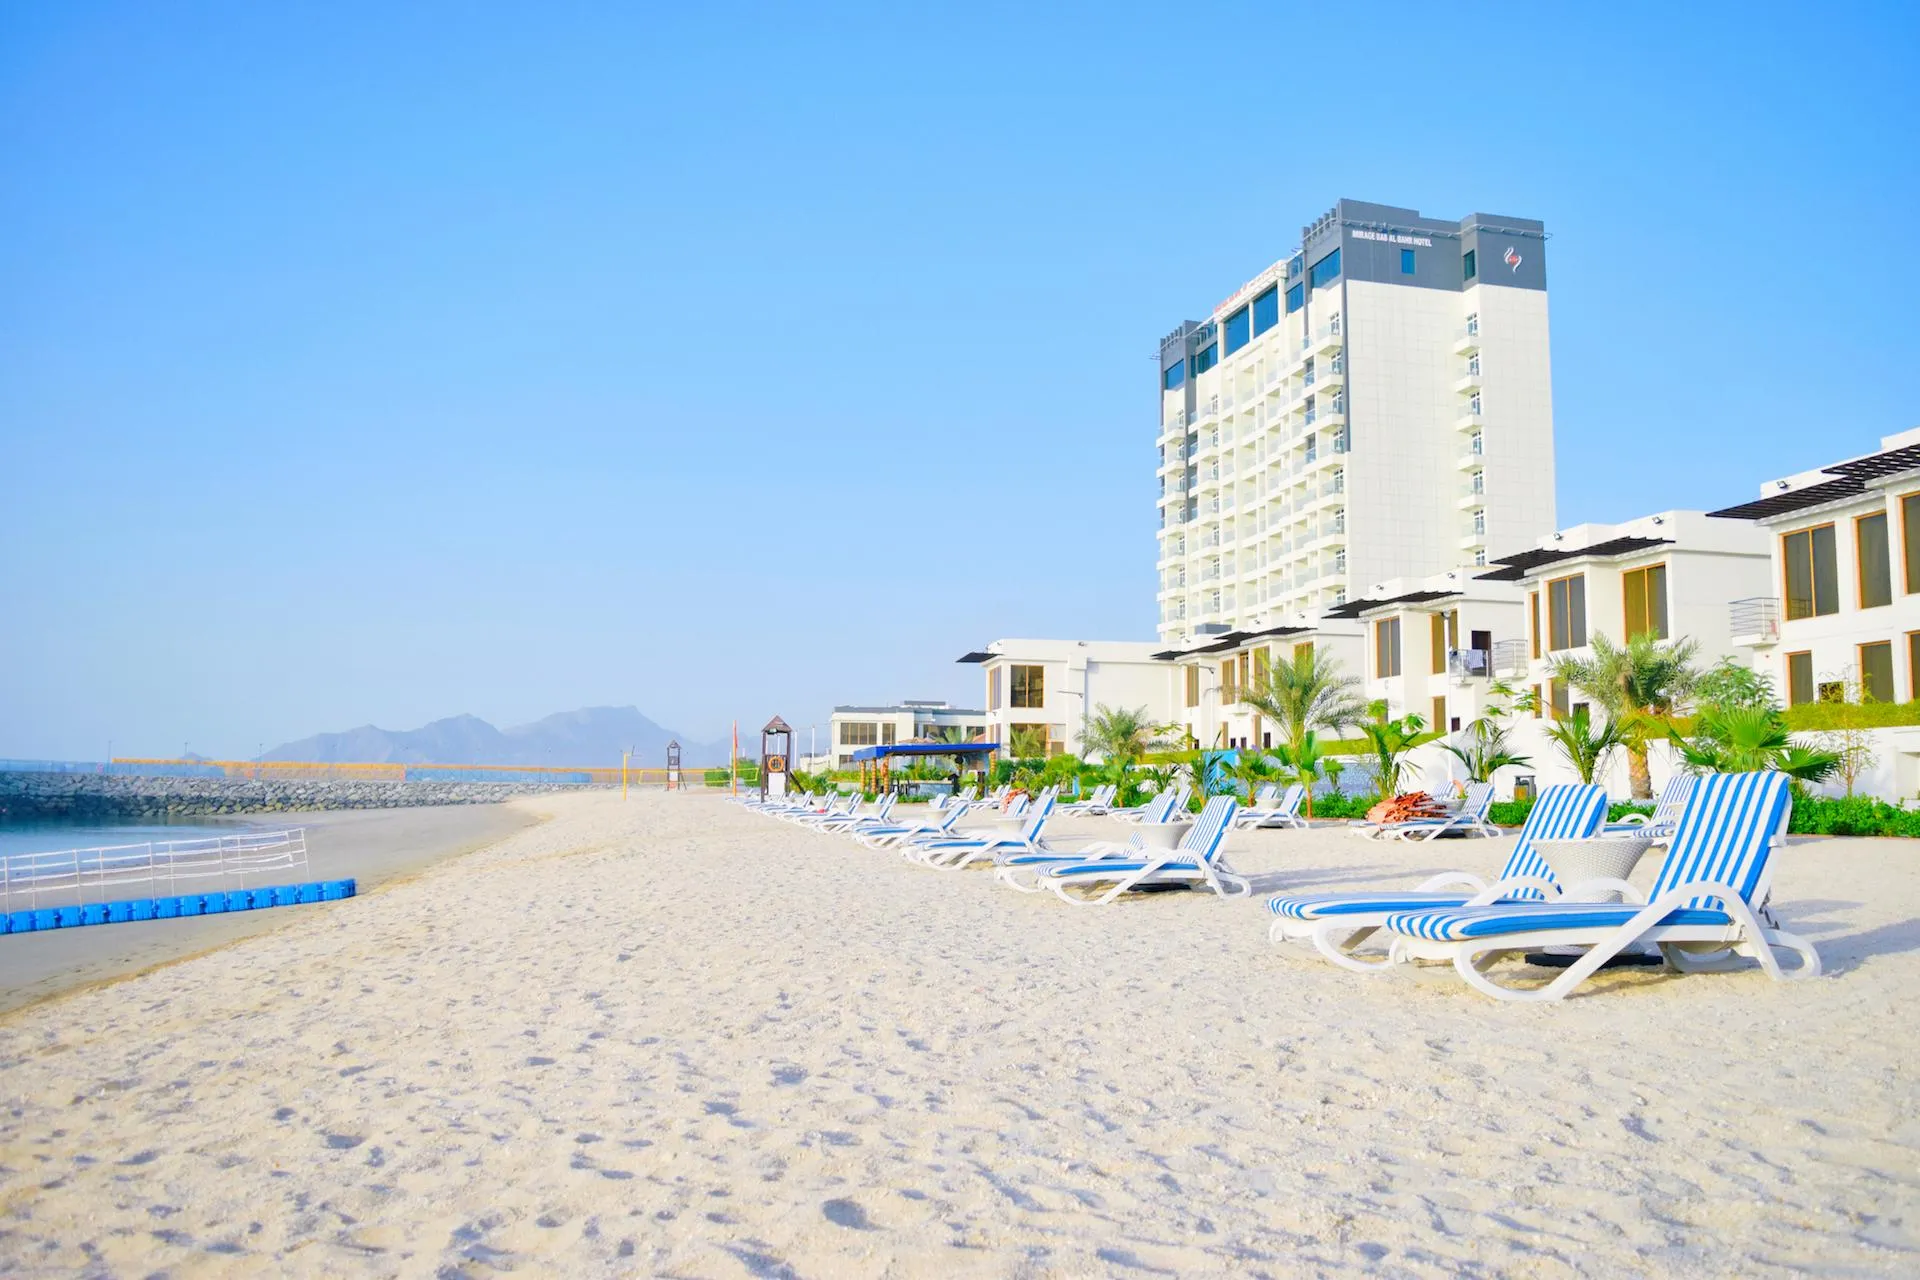 Аль Бандар Бич - чистый пляж в Дубае, ОАЭ.